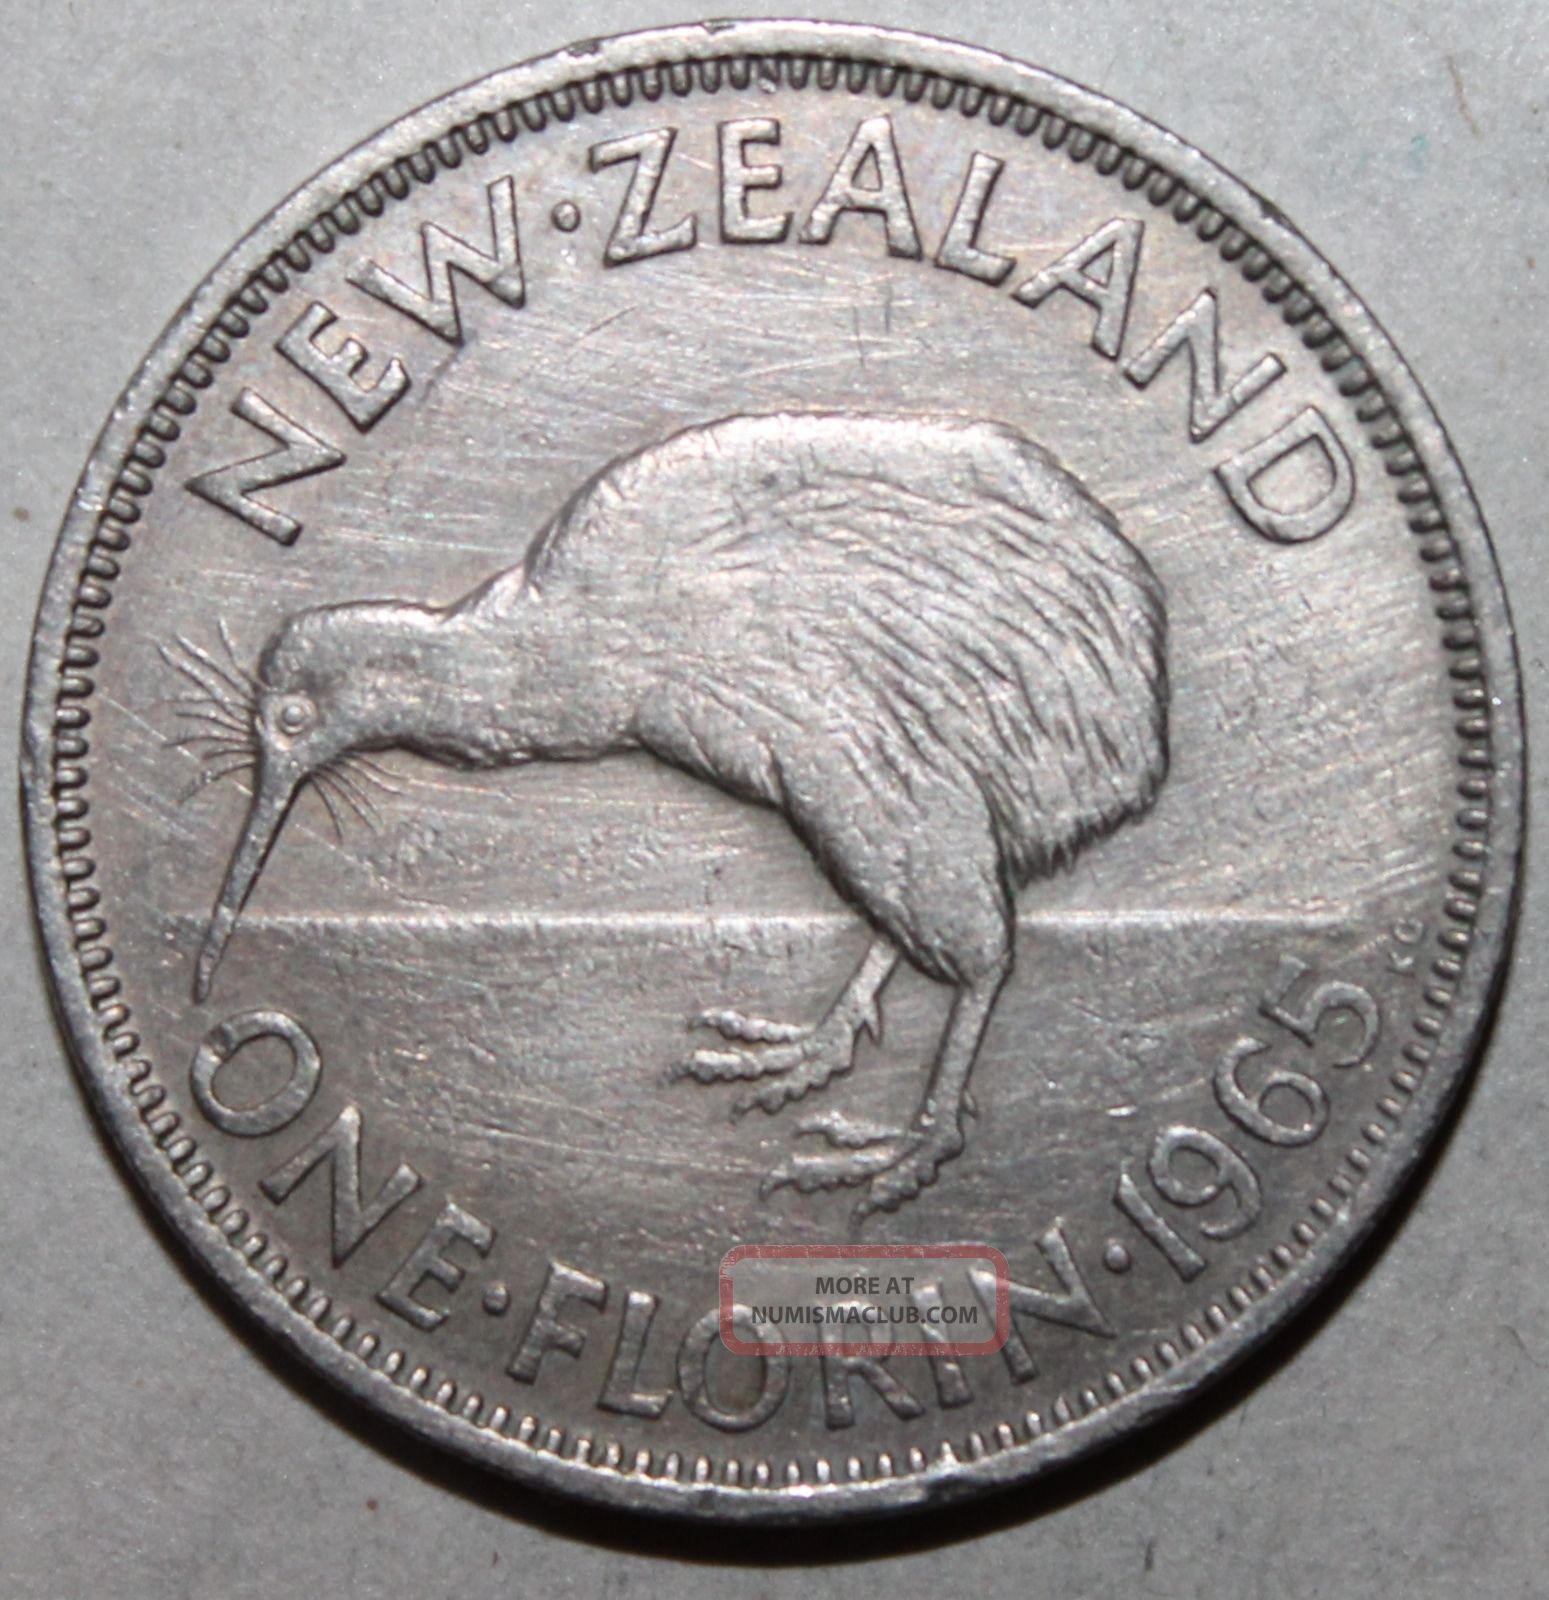 Zealand 1 Florin Coin,  1965 - Km 28 - Queen Elizabeth Ii - Kiwi - One New Zealand photo